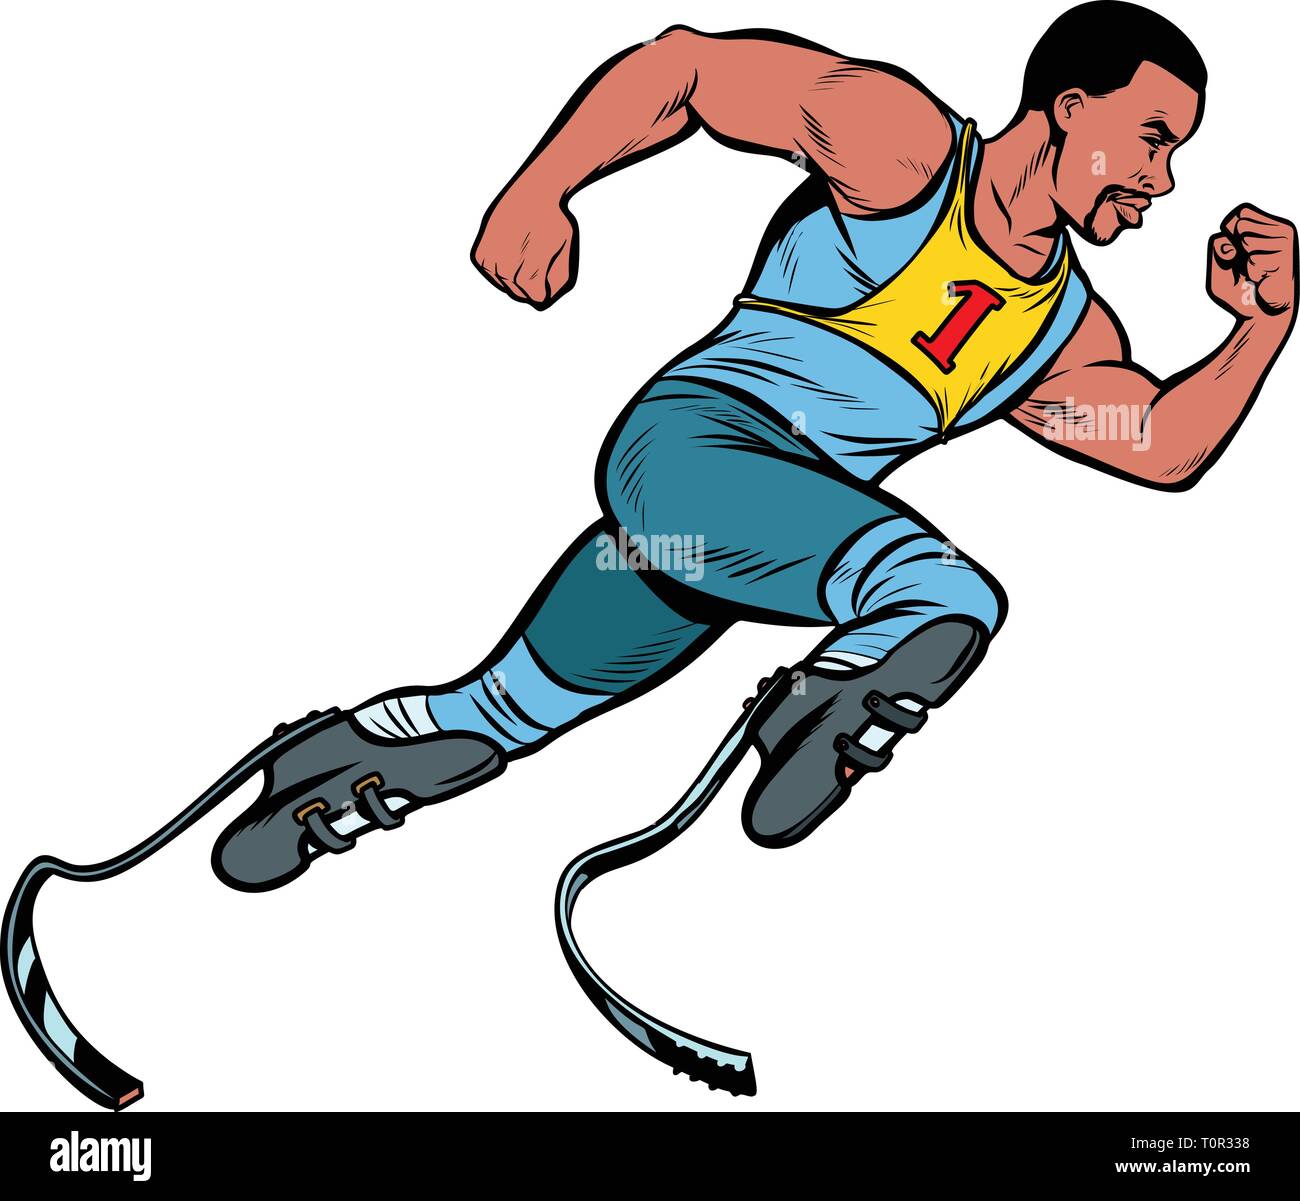 Deaktiviert die afrikanischen Läufer mit beinprothesen freuen. sport Wettbewerb. Pop Art retro Vektor illustration Vintage kitsch Stock Vektor